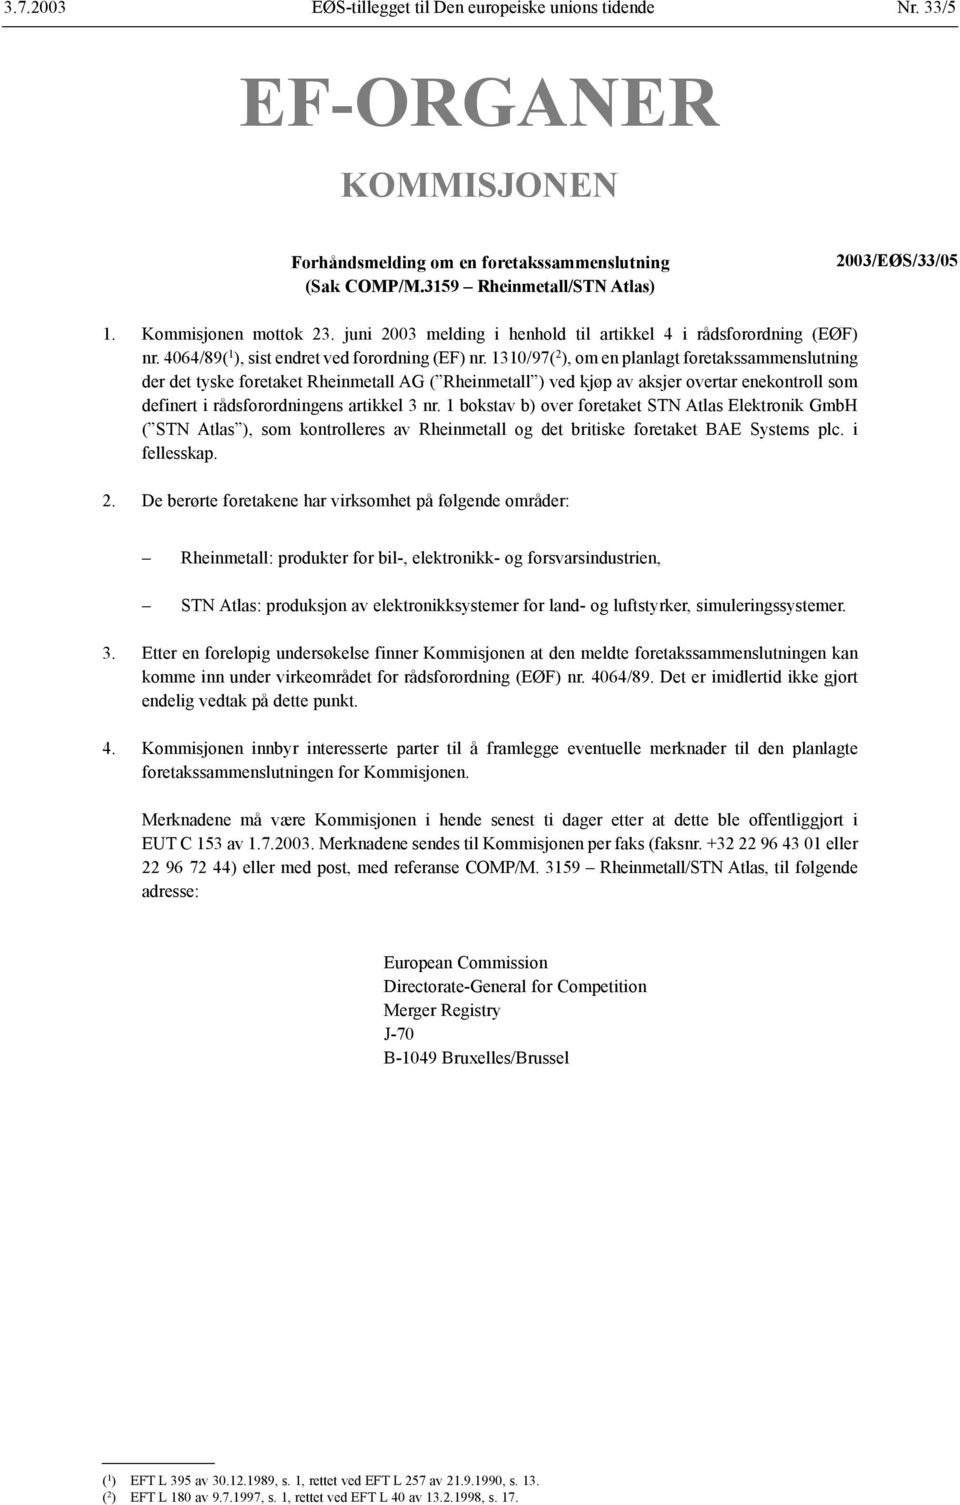 1310/97( 2 ), om en planlagt foretakssammenslutning der det tyske foretaket Rheinmetall AG ( Rheinmetall ) ved kjøp av aksjer overtar enekontroll som definert i rådsforordningens artikkel 3 nr.